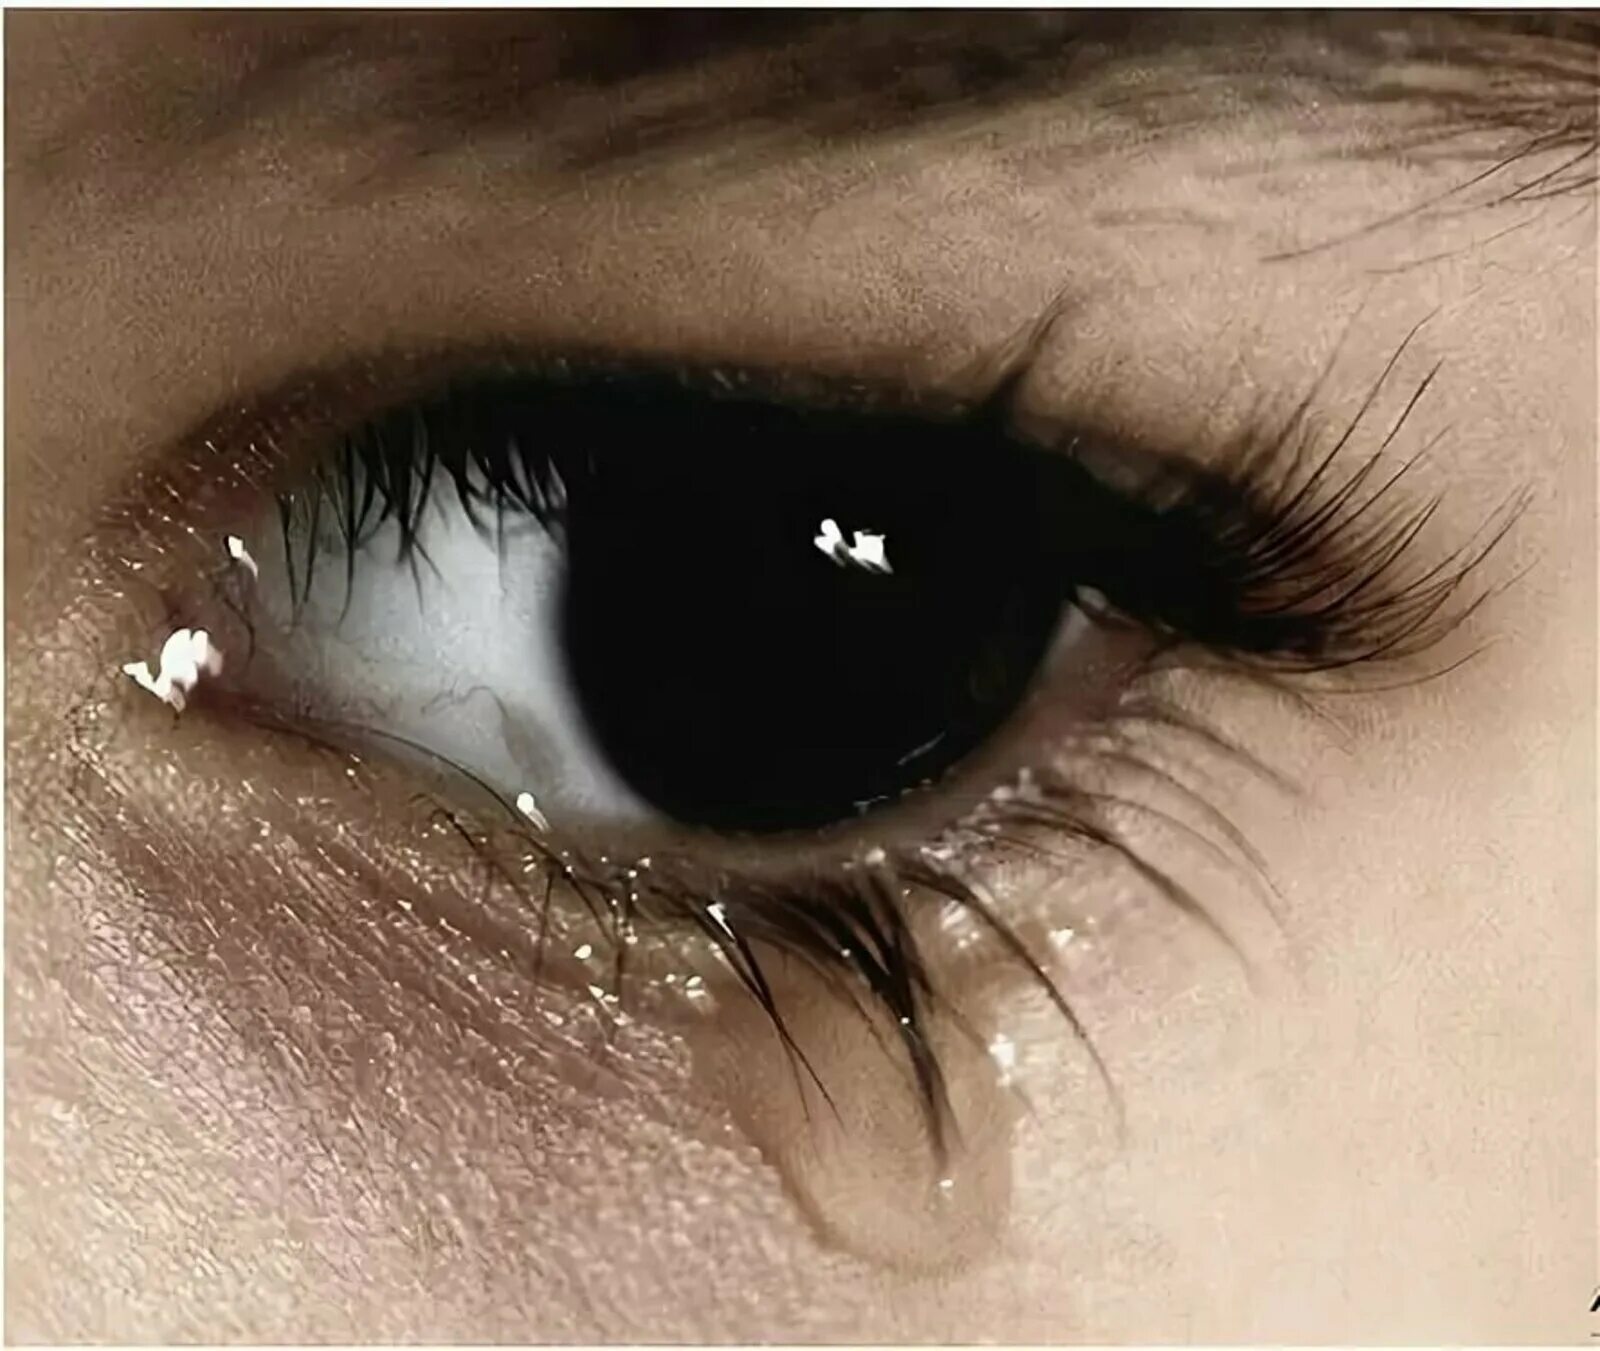 Глазки плачут. Плачущий глаз. Заплаканные глаза. Карий глаз со слезой. Заплаканные глаза девушки карие.